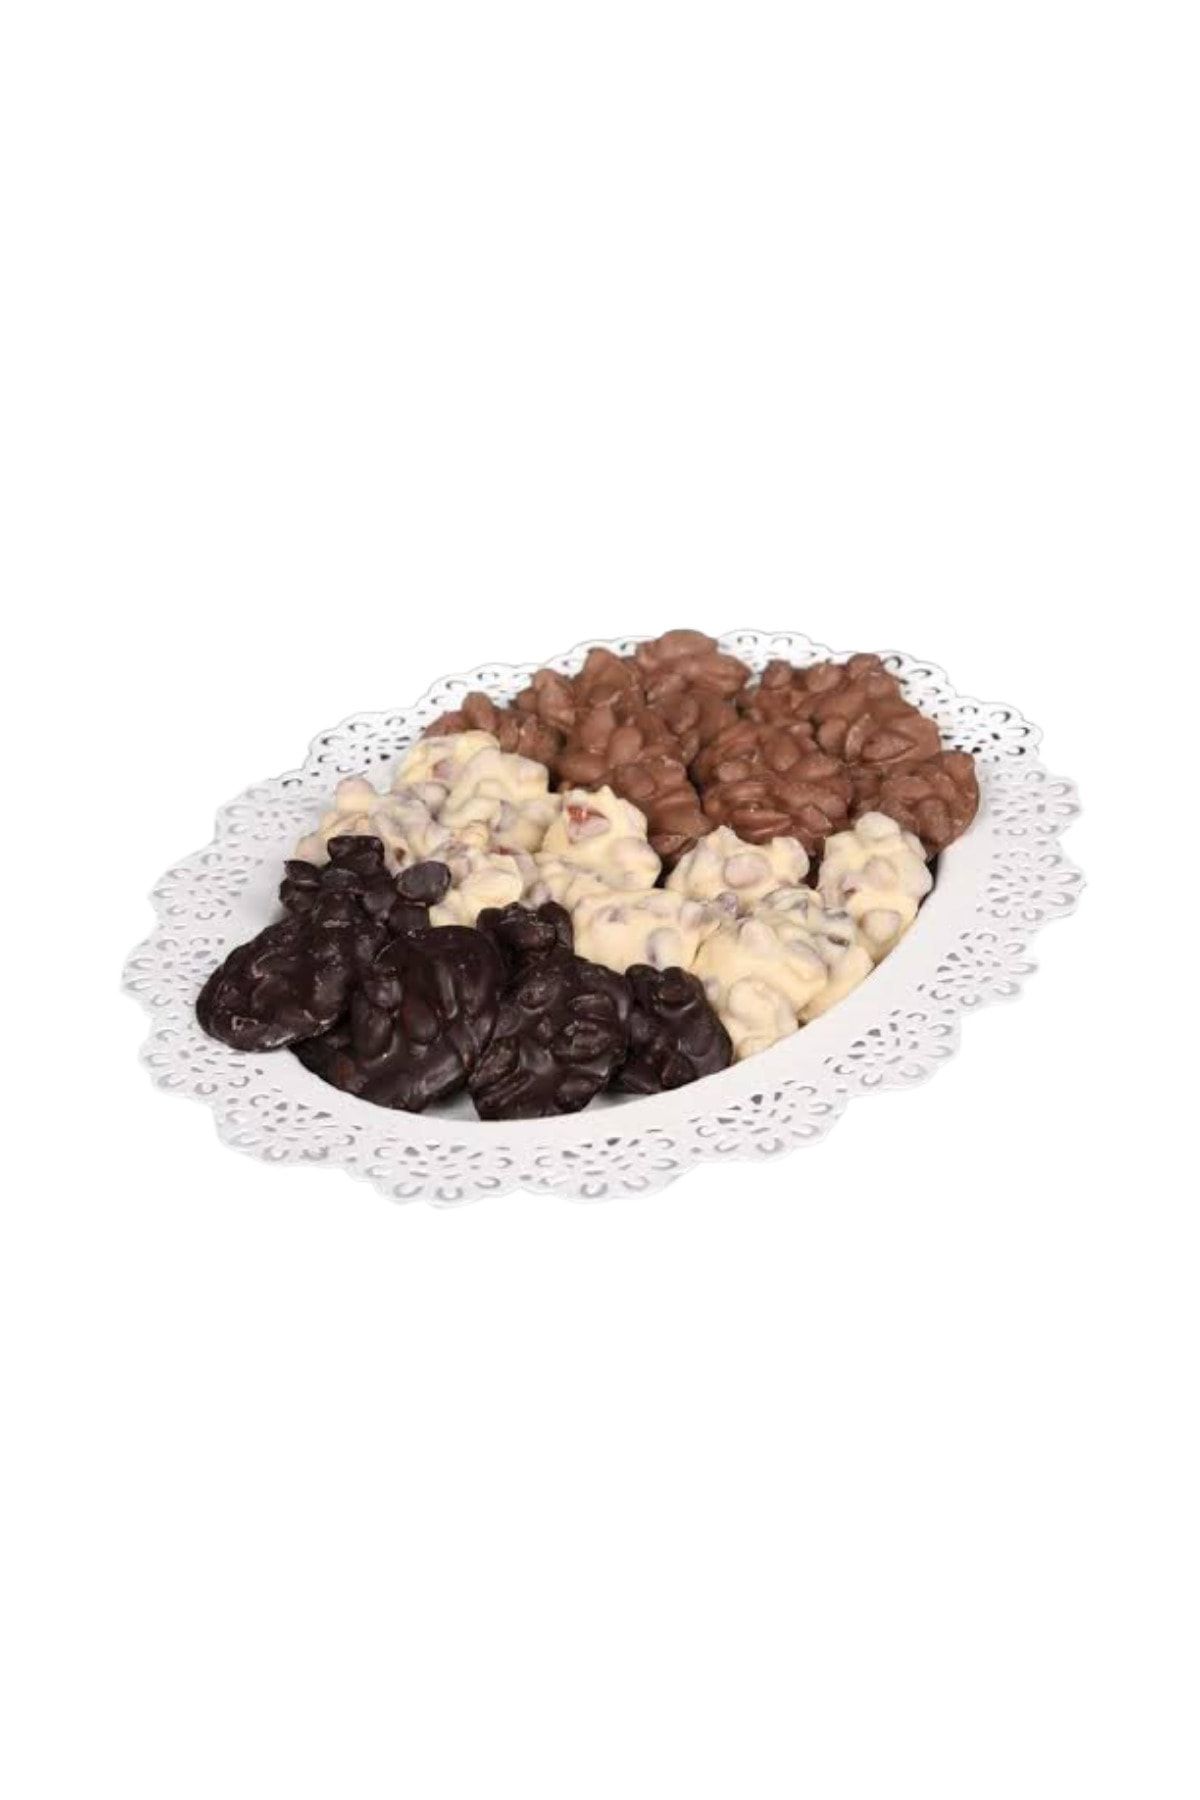 patik kuru gıda Malatya Cimix Çikolata Kaplamalı Kayısı Çekirdeği 500 gr